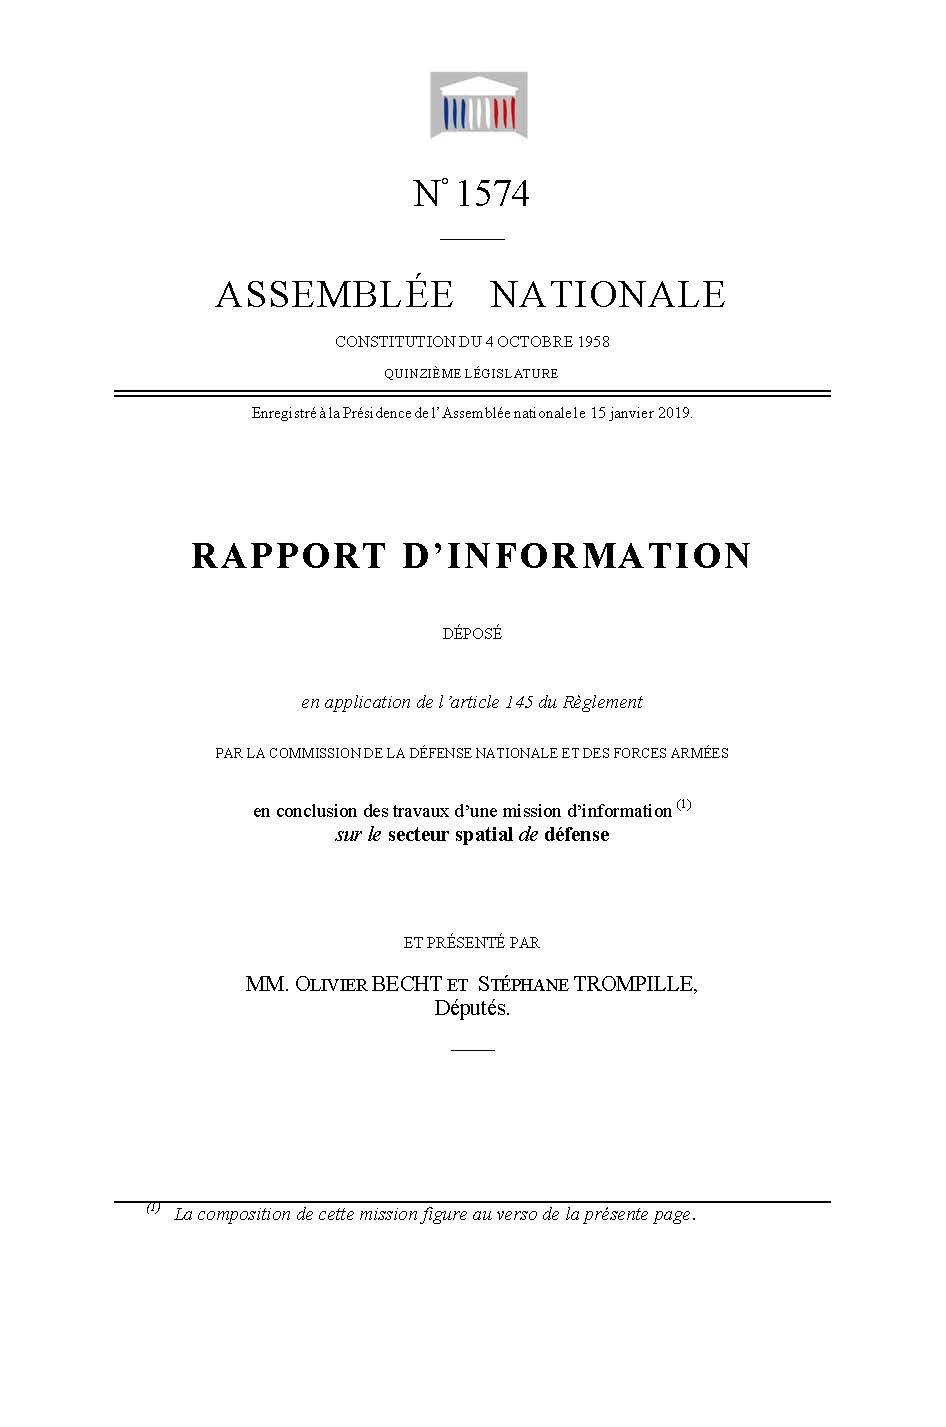 RAPPORT D’INFORMATION SUR LE SECTEUR SPATIAL DE DÉFENSE